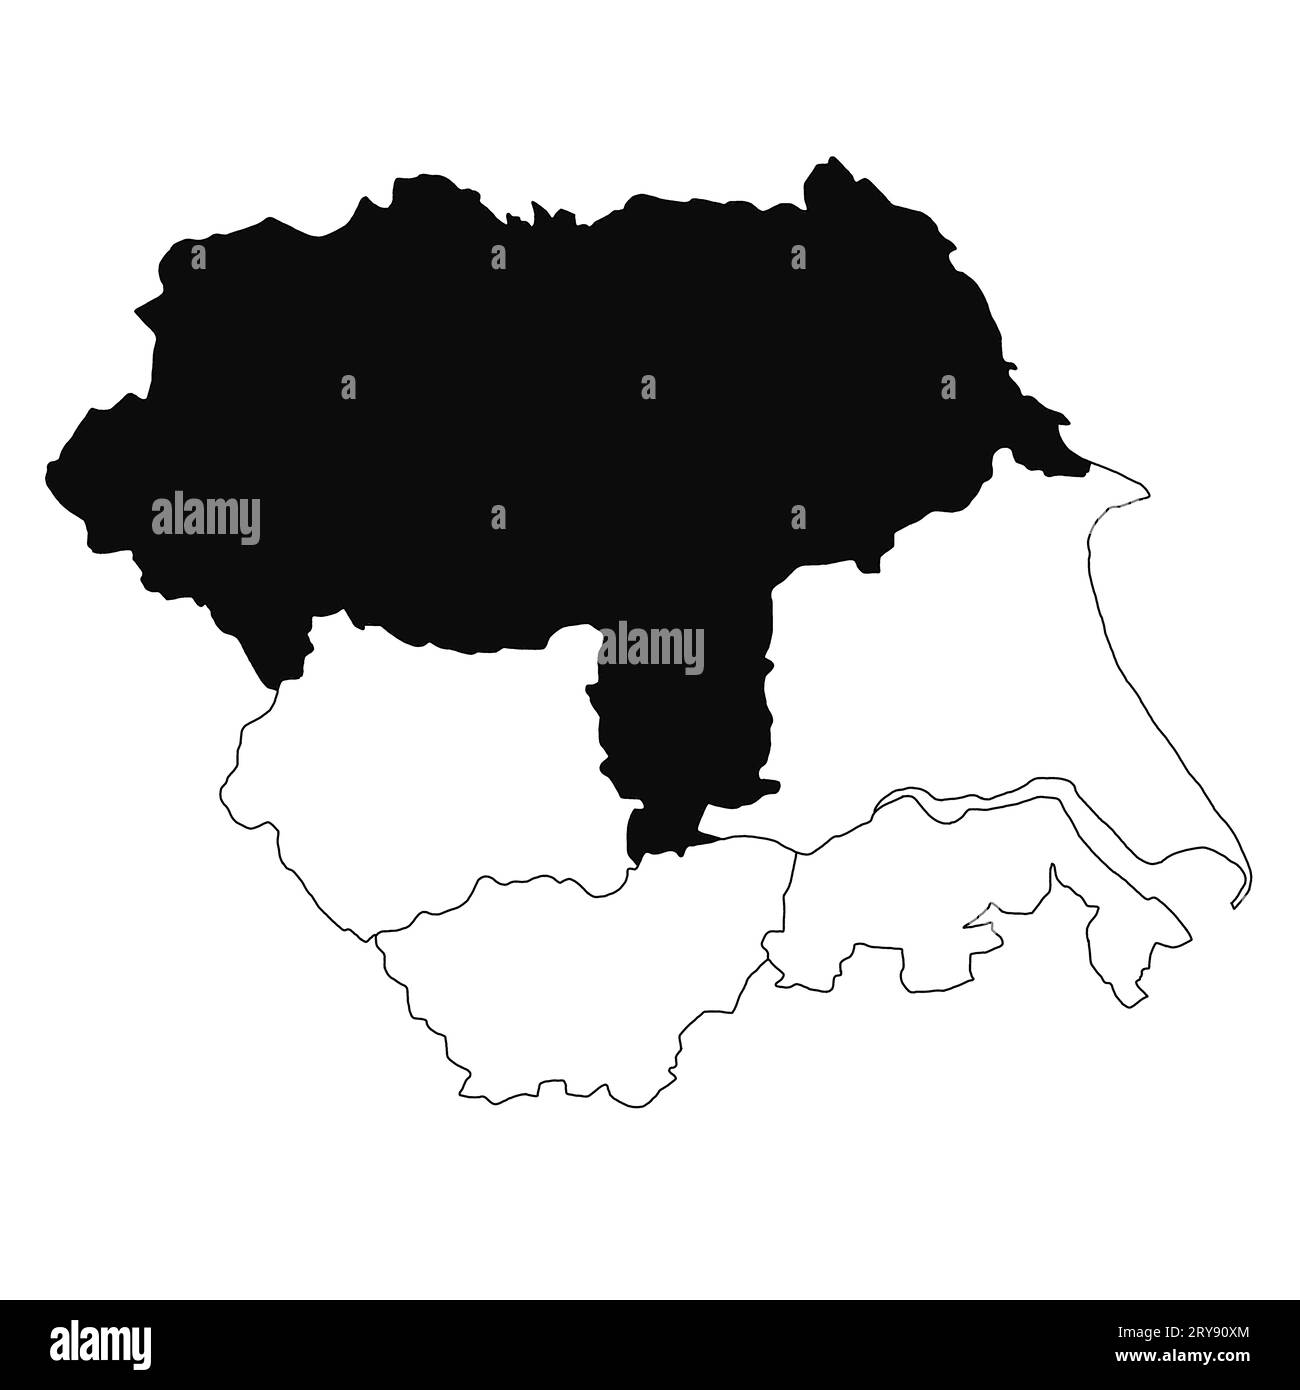 Karte von North Yorkshire in Yorkshire und der Provinz Humber auf weißem Hintergrund. Single County Karte mit schwarzer Farbmarkierung auf Yorkshire und dem H Stockfoto